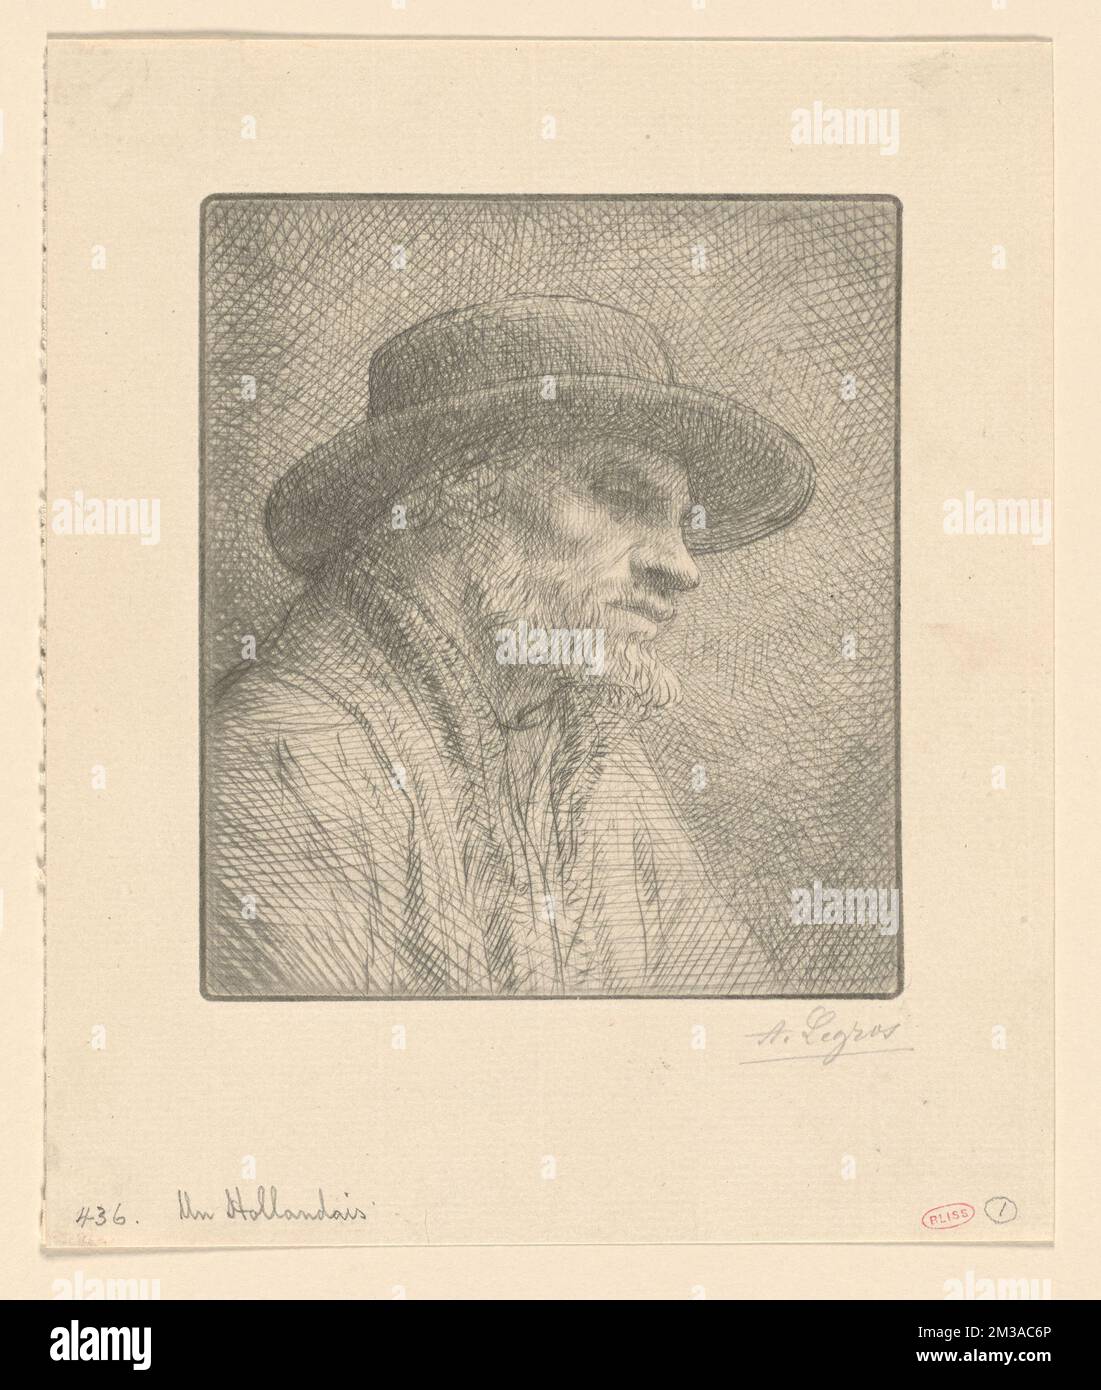 Un Hollandais , Alphonse Legros (1837-1911) Stock Photo